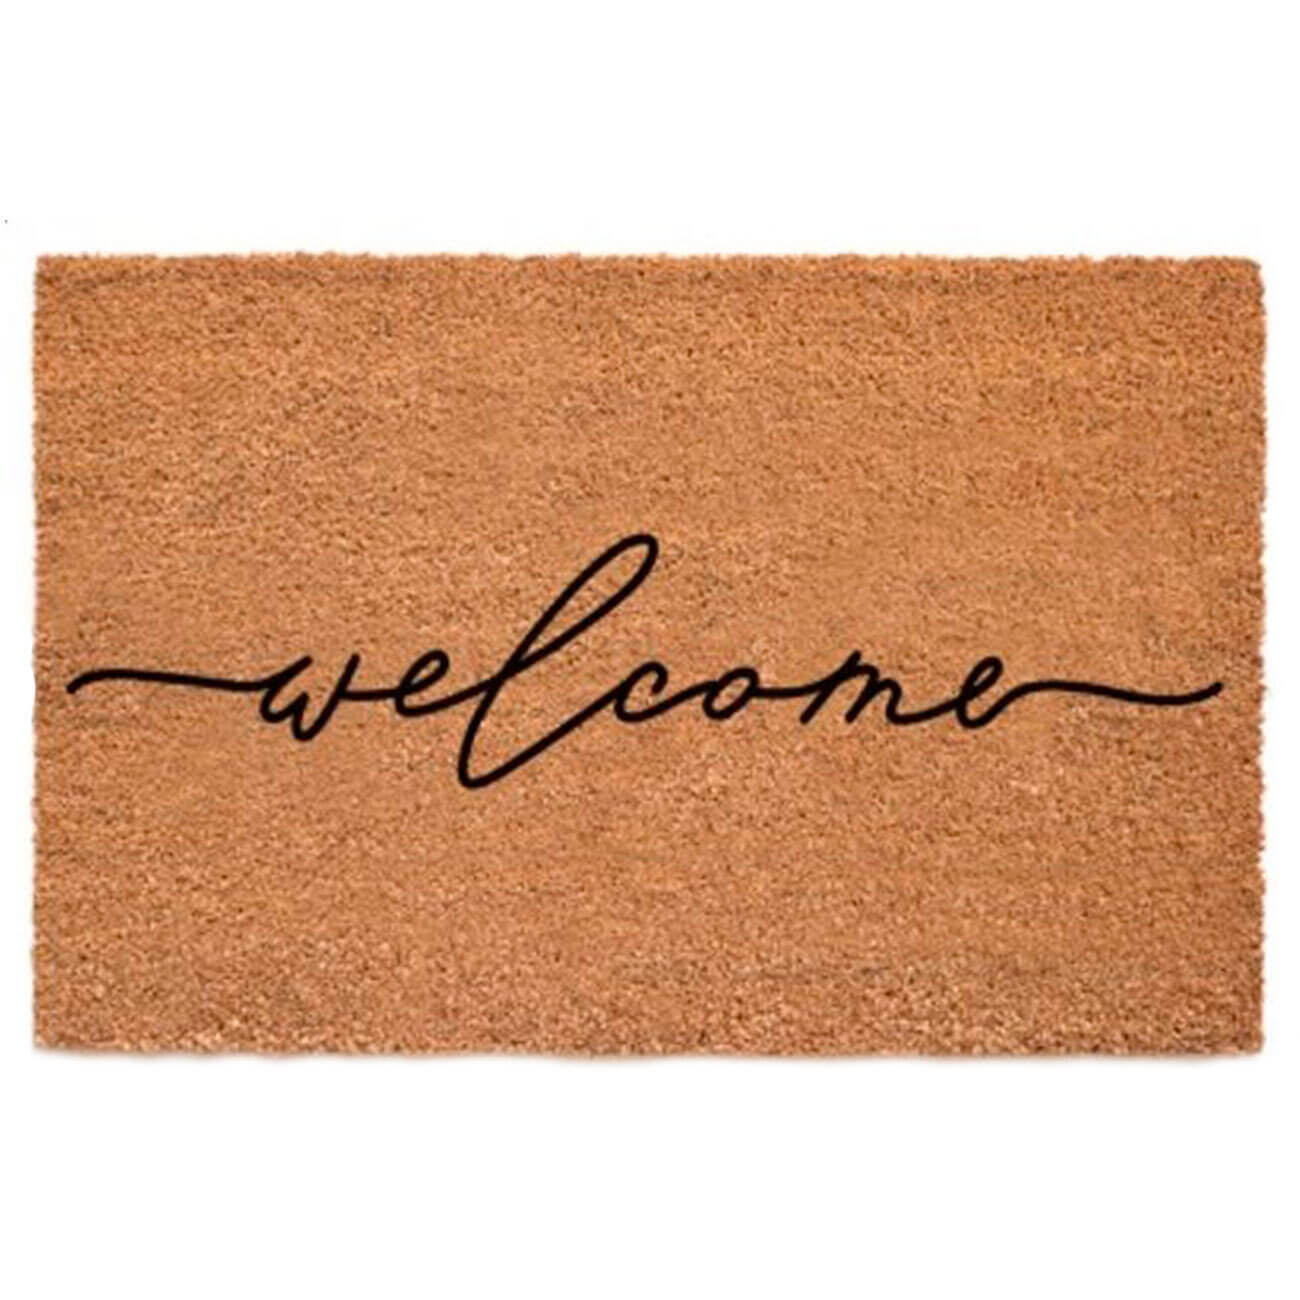 Коврик придверный, 45х75 см, кокос/пвх, коричневый, Welcome, Home deco коврик inspire rubesto welcome с 45x75 см резина